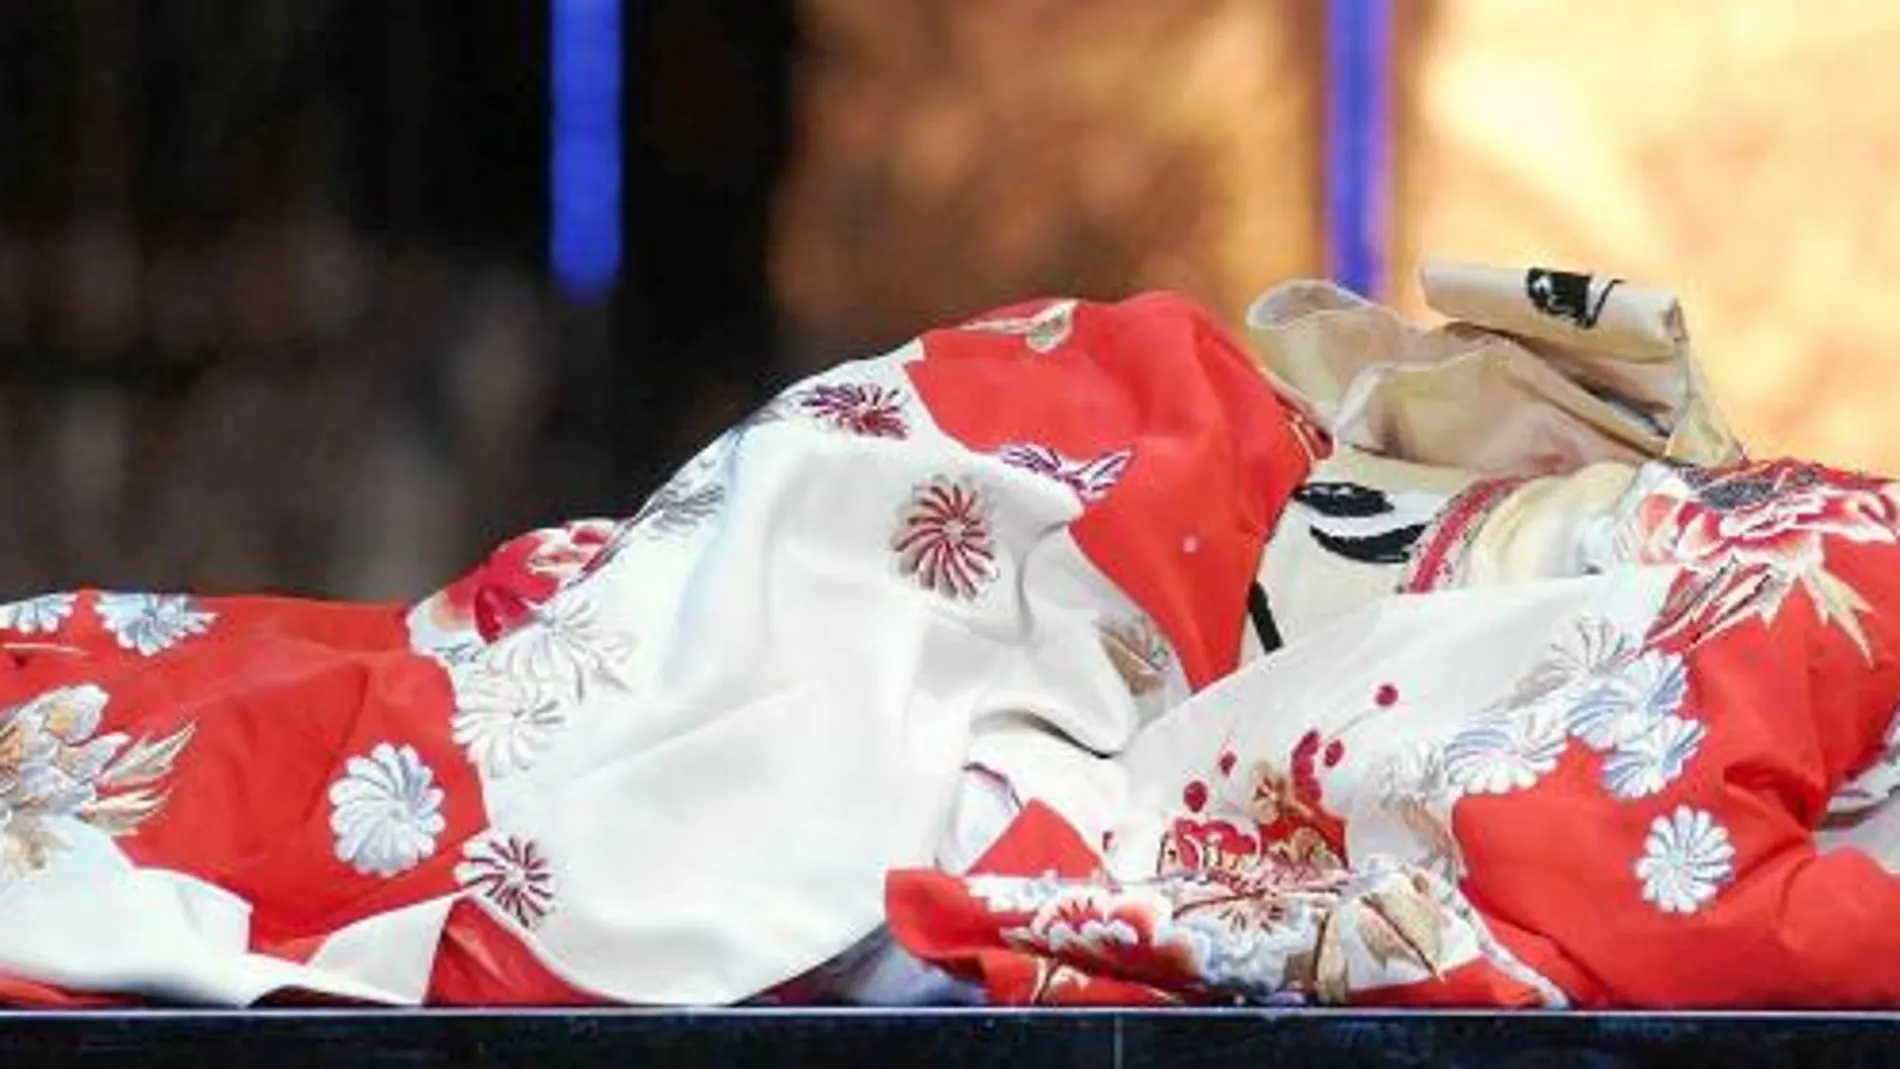 La soprano Ermonela Jaho, de origen albanés, debutó en el papel de la joven geisha en 2009